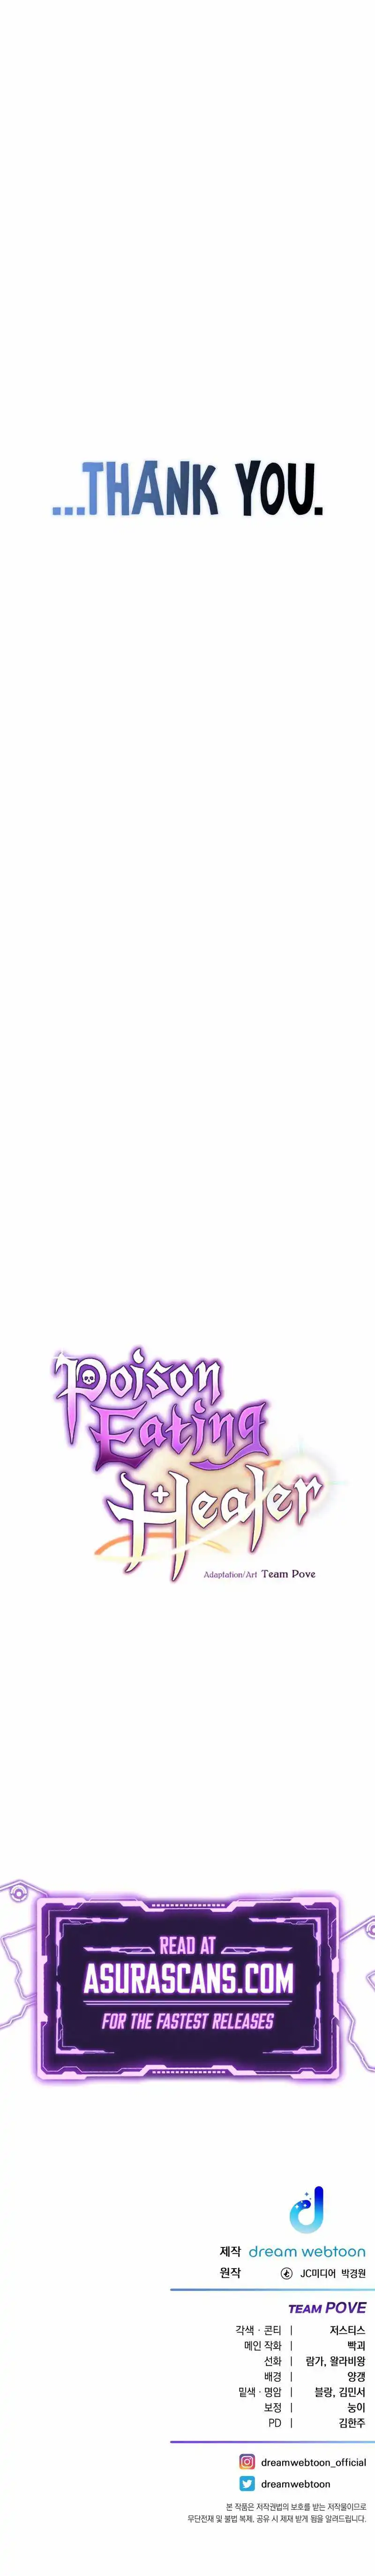 Poison-Eating Healer Chapter 39